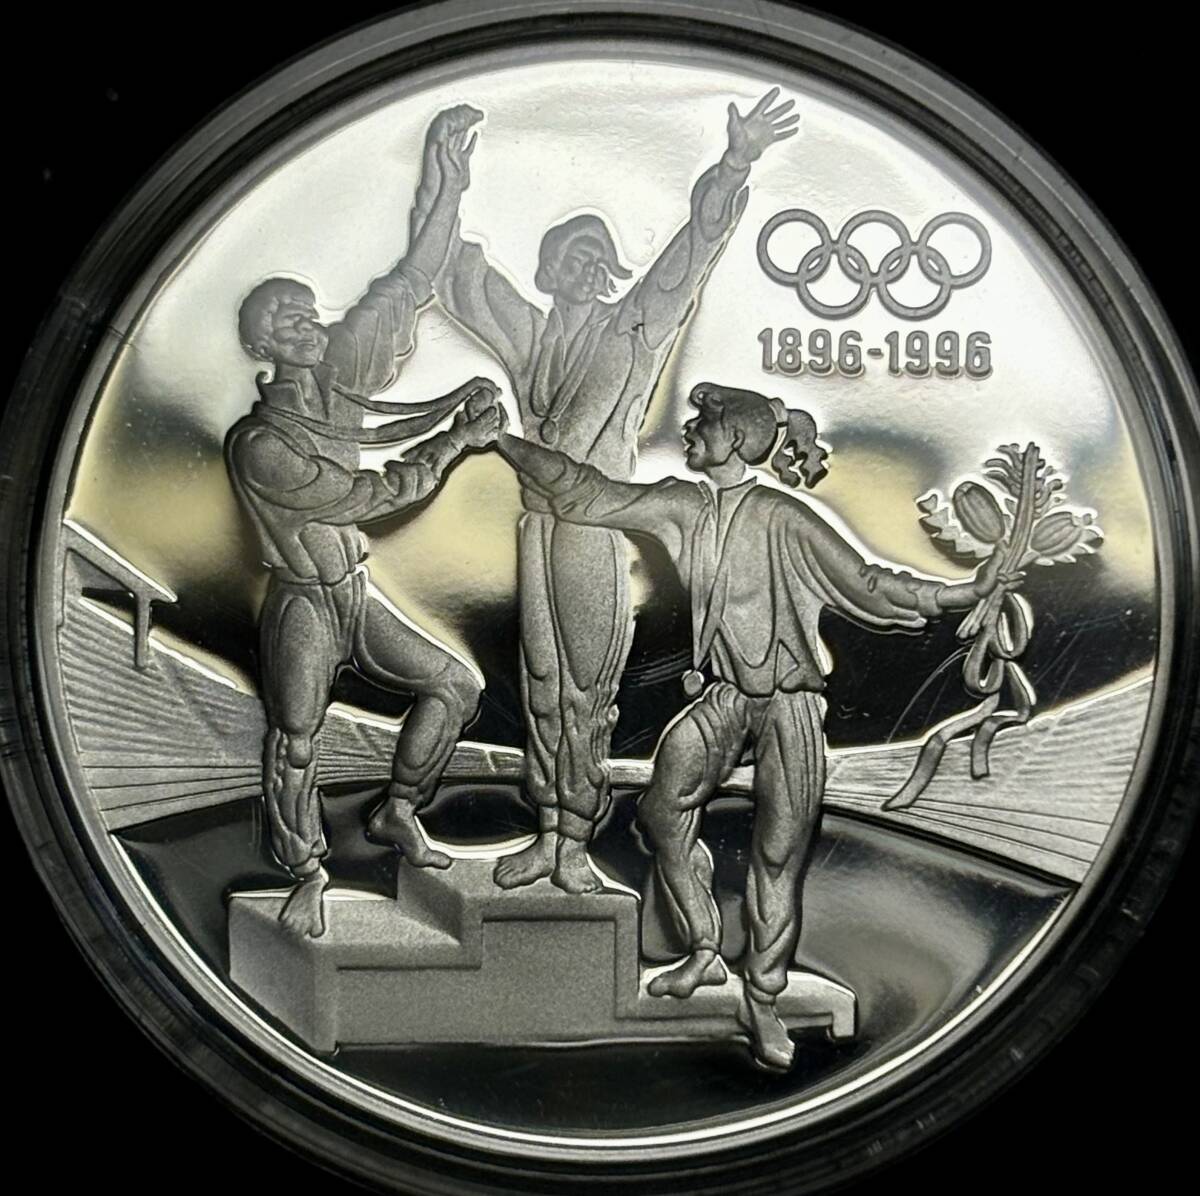 【オリンピック百年記念-大型銀貨】(オーストラリア発行 34.0g 直径40mm 1993年銘 プルーフ)